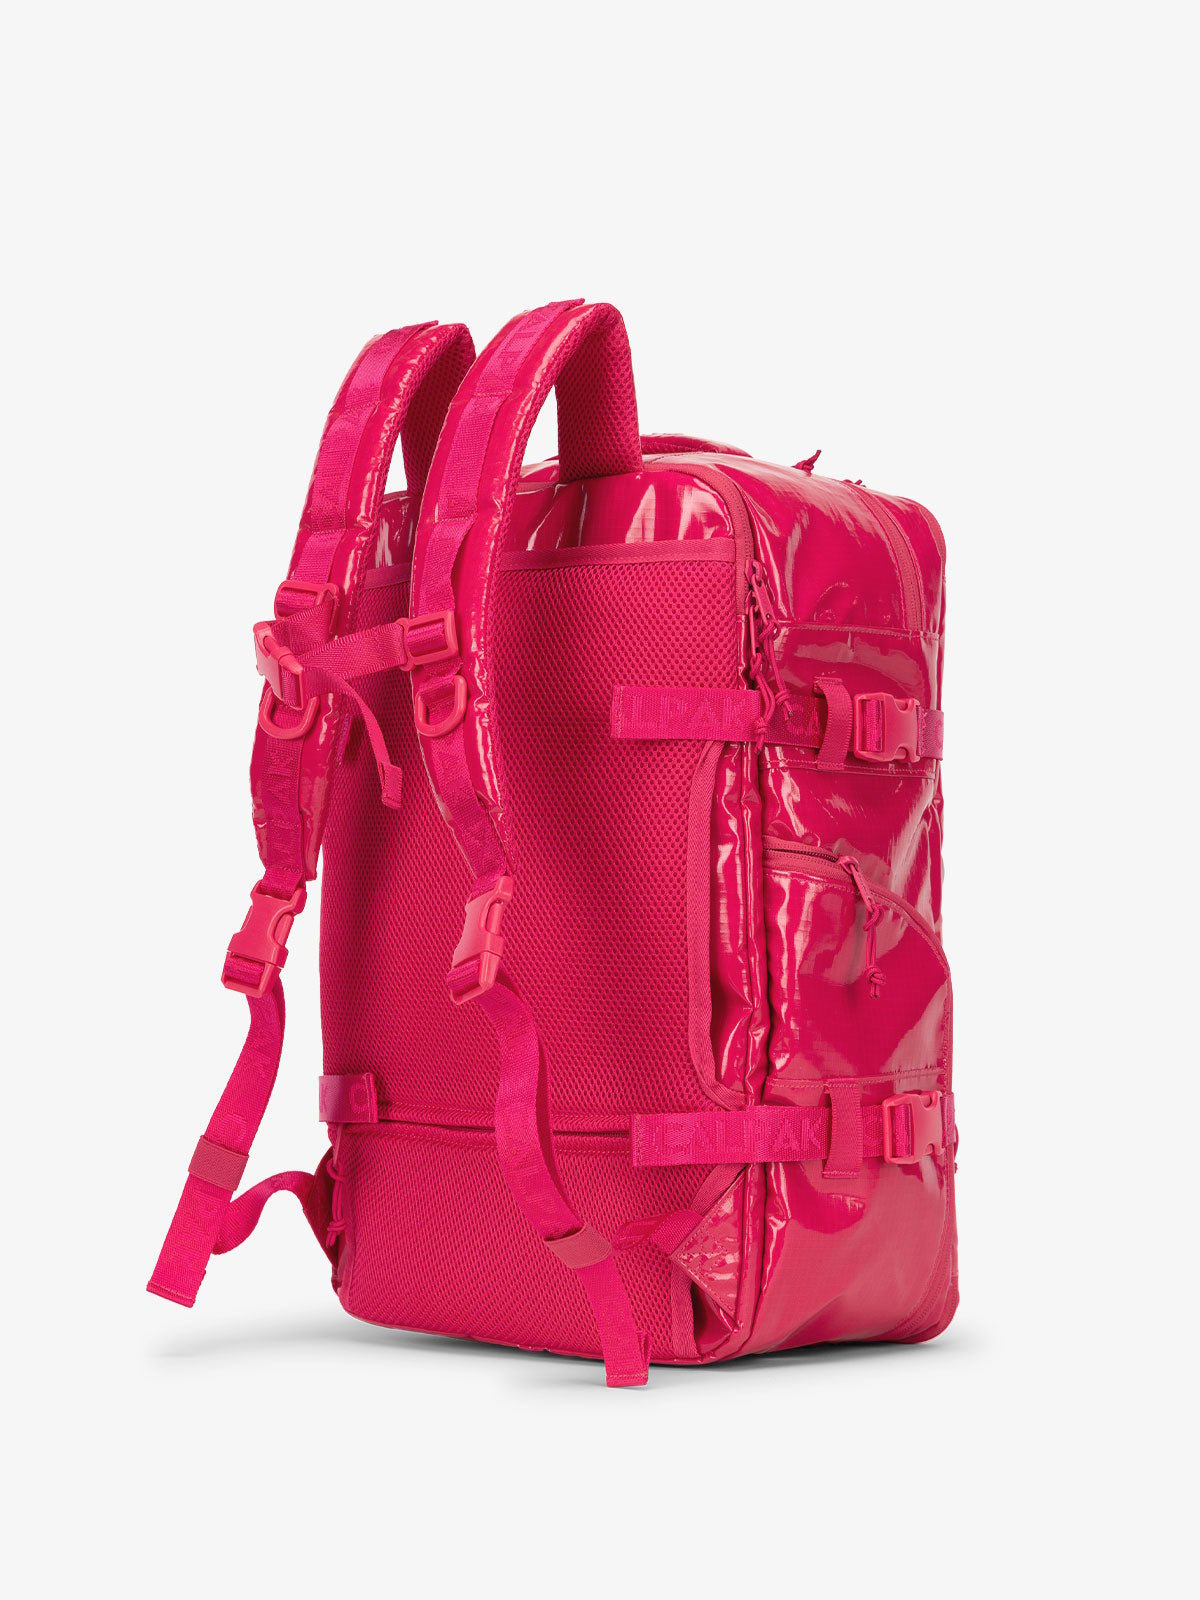 CALPAK Terra 26L Laptop Backpack Duffel with detachable adjustable shoulder strap in pink dragonfruit